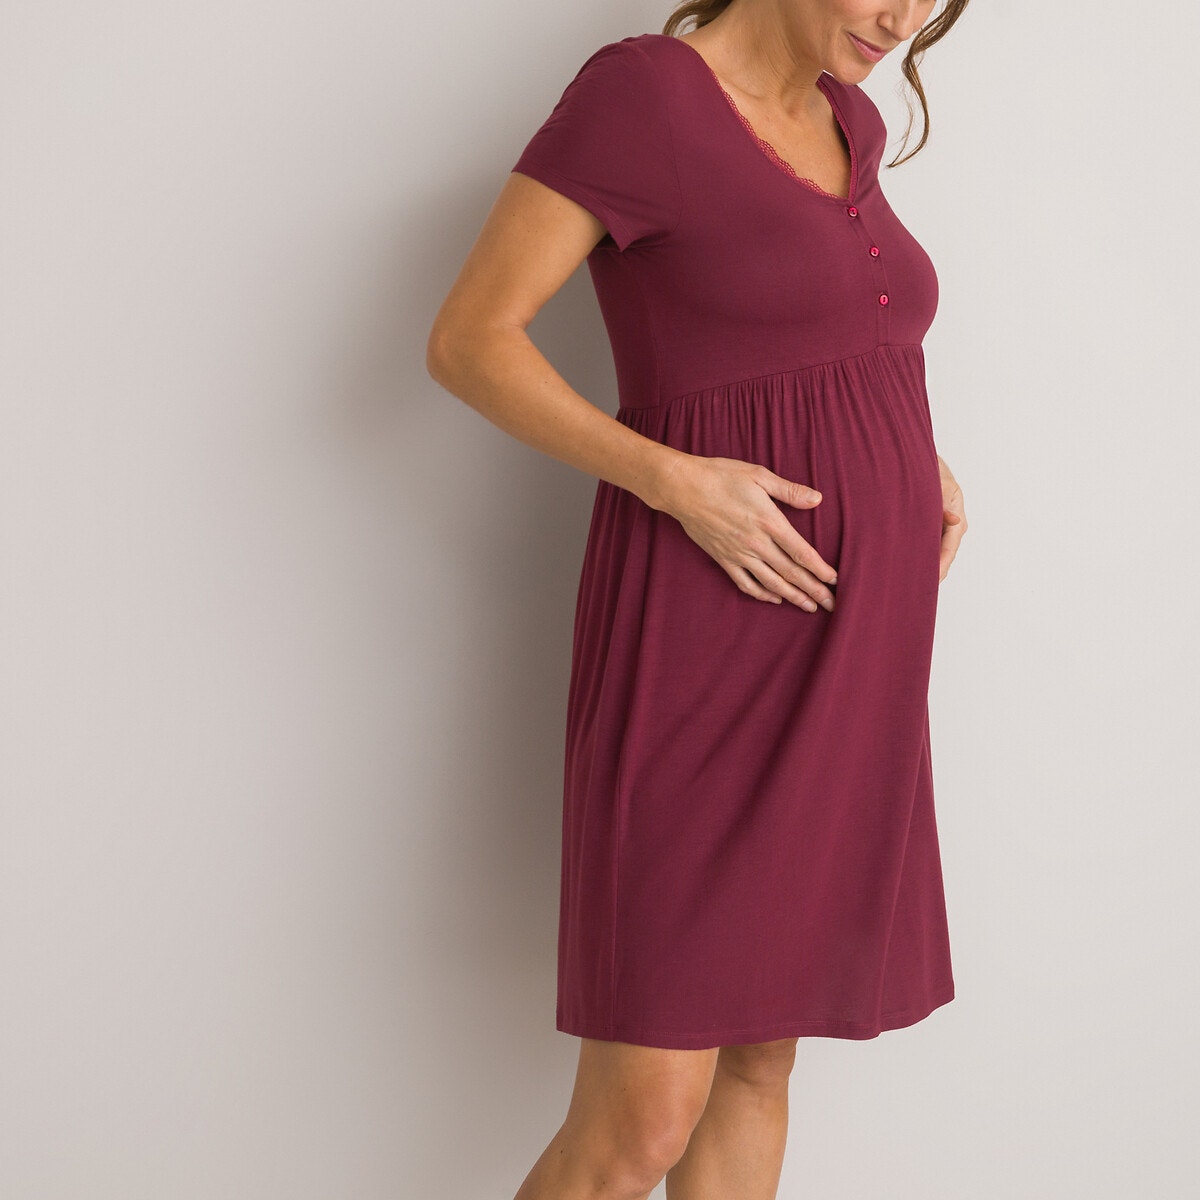 Νυχτικό εγκυμοσύνης και θηλασμού